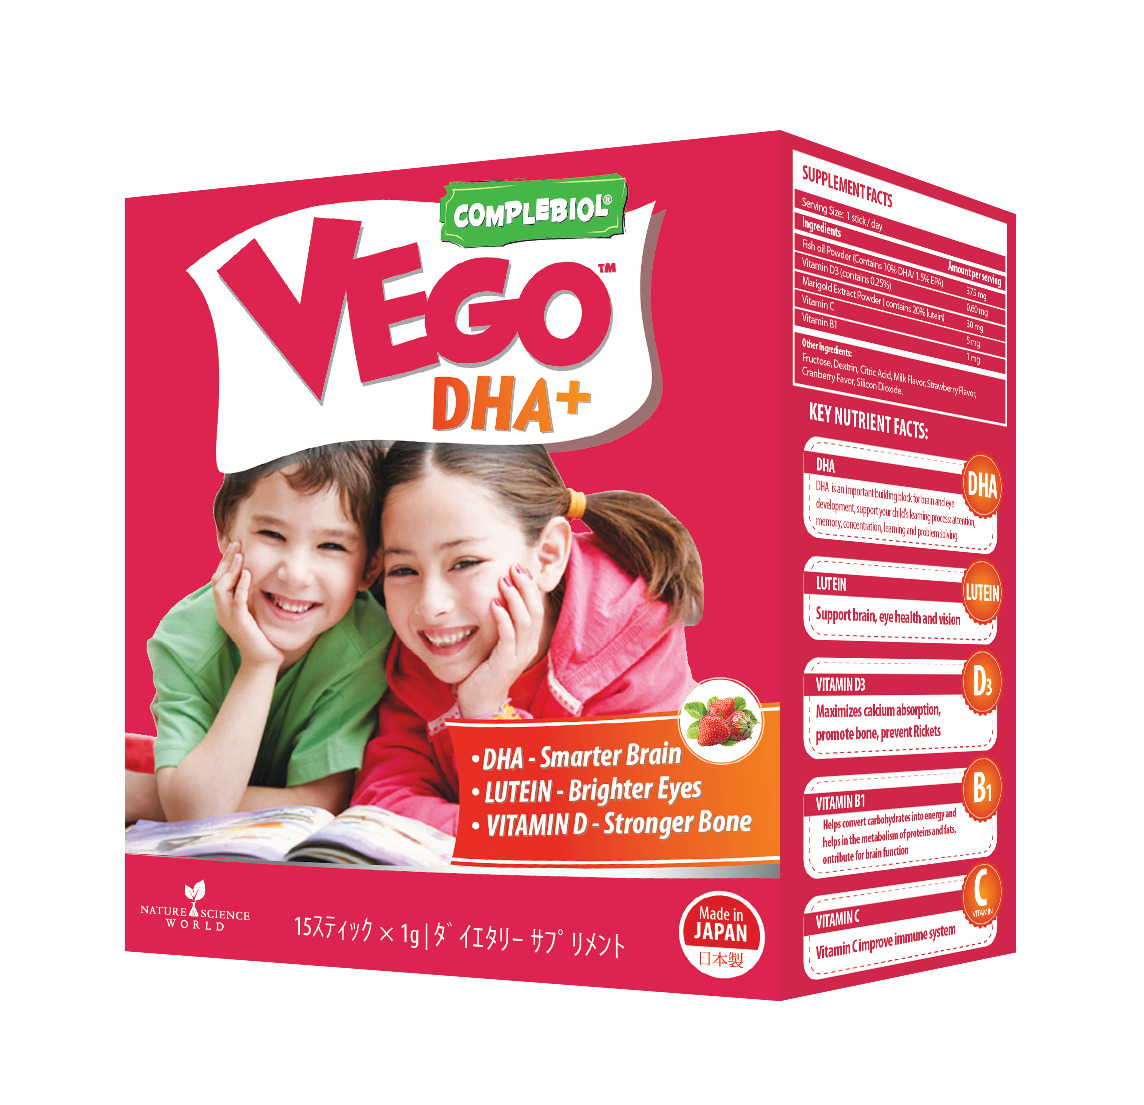 Sữa bột Vego DHA+ - hộp 15 gói (dành cho trẻ từ 3 tuổi trở lên)